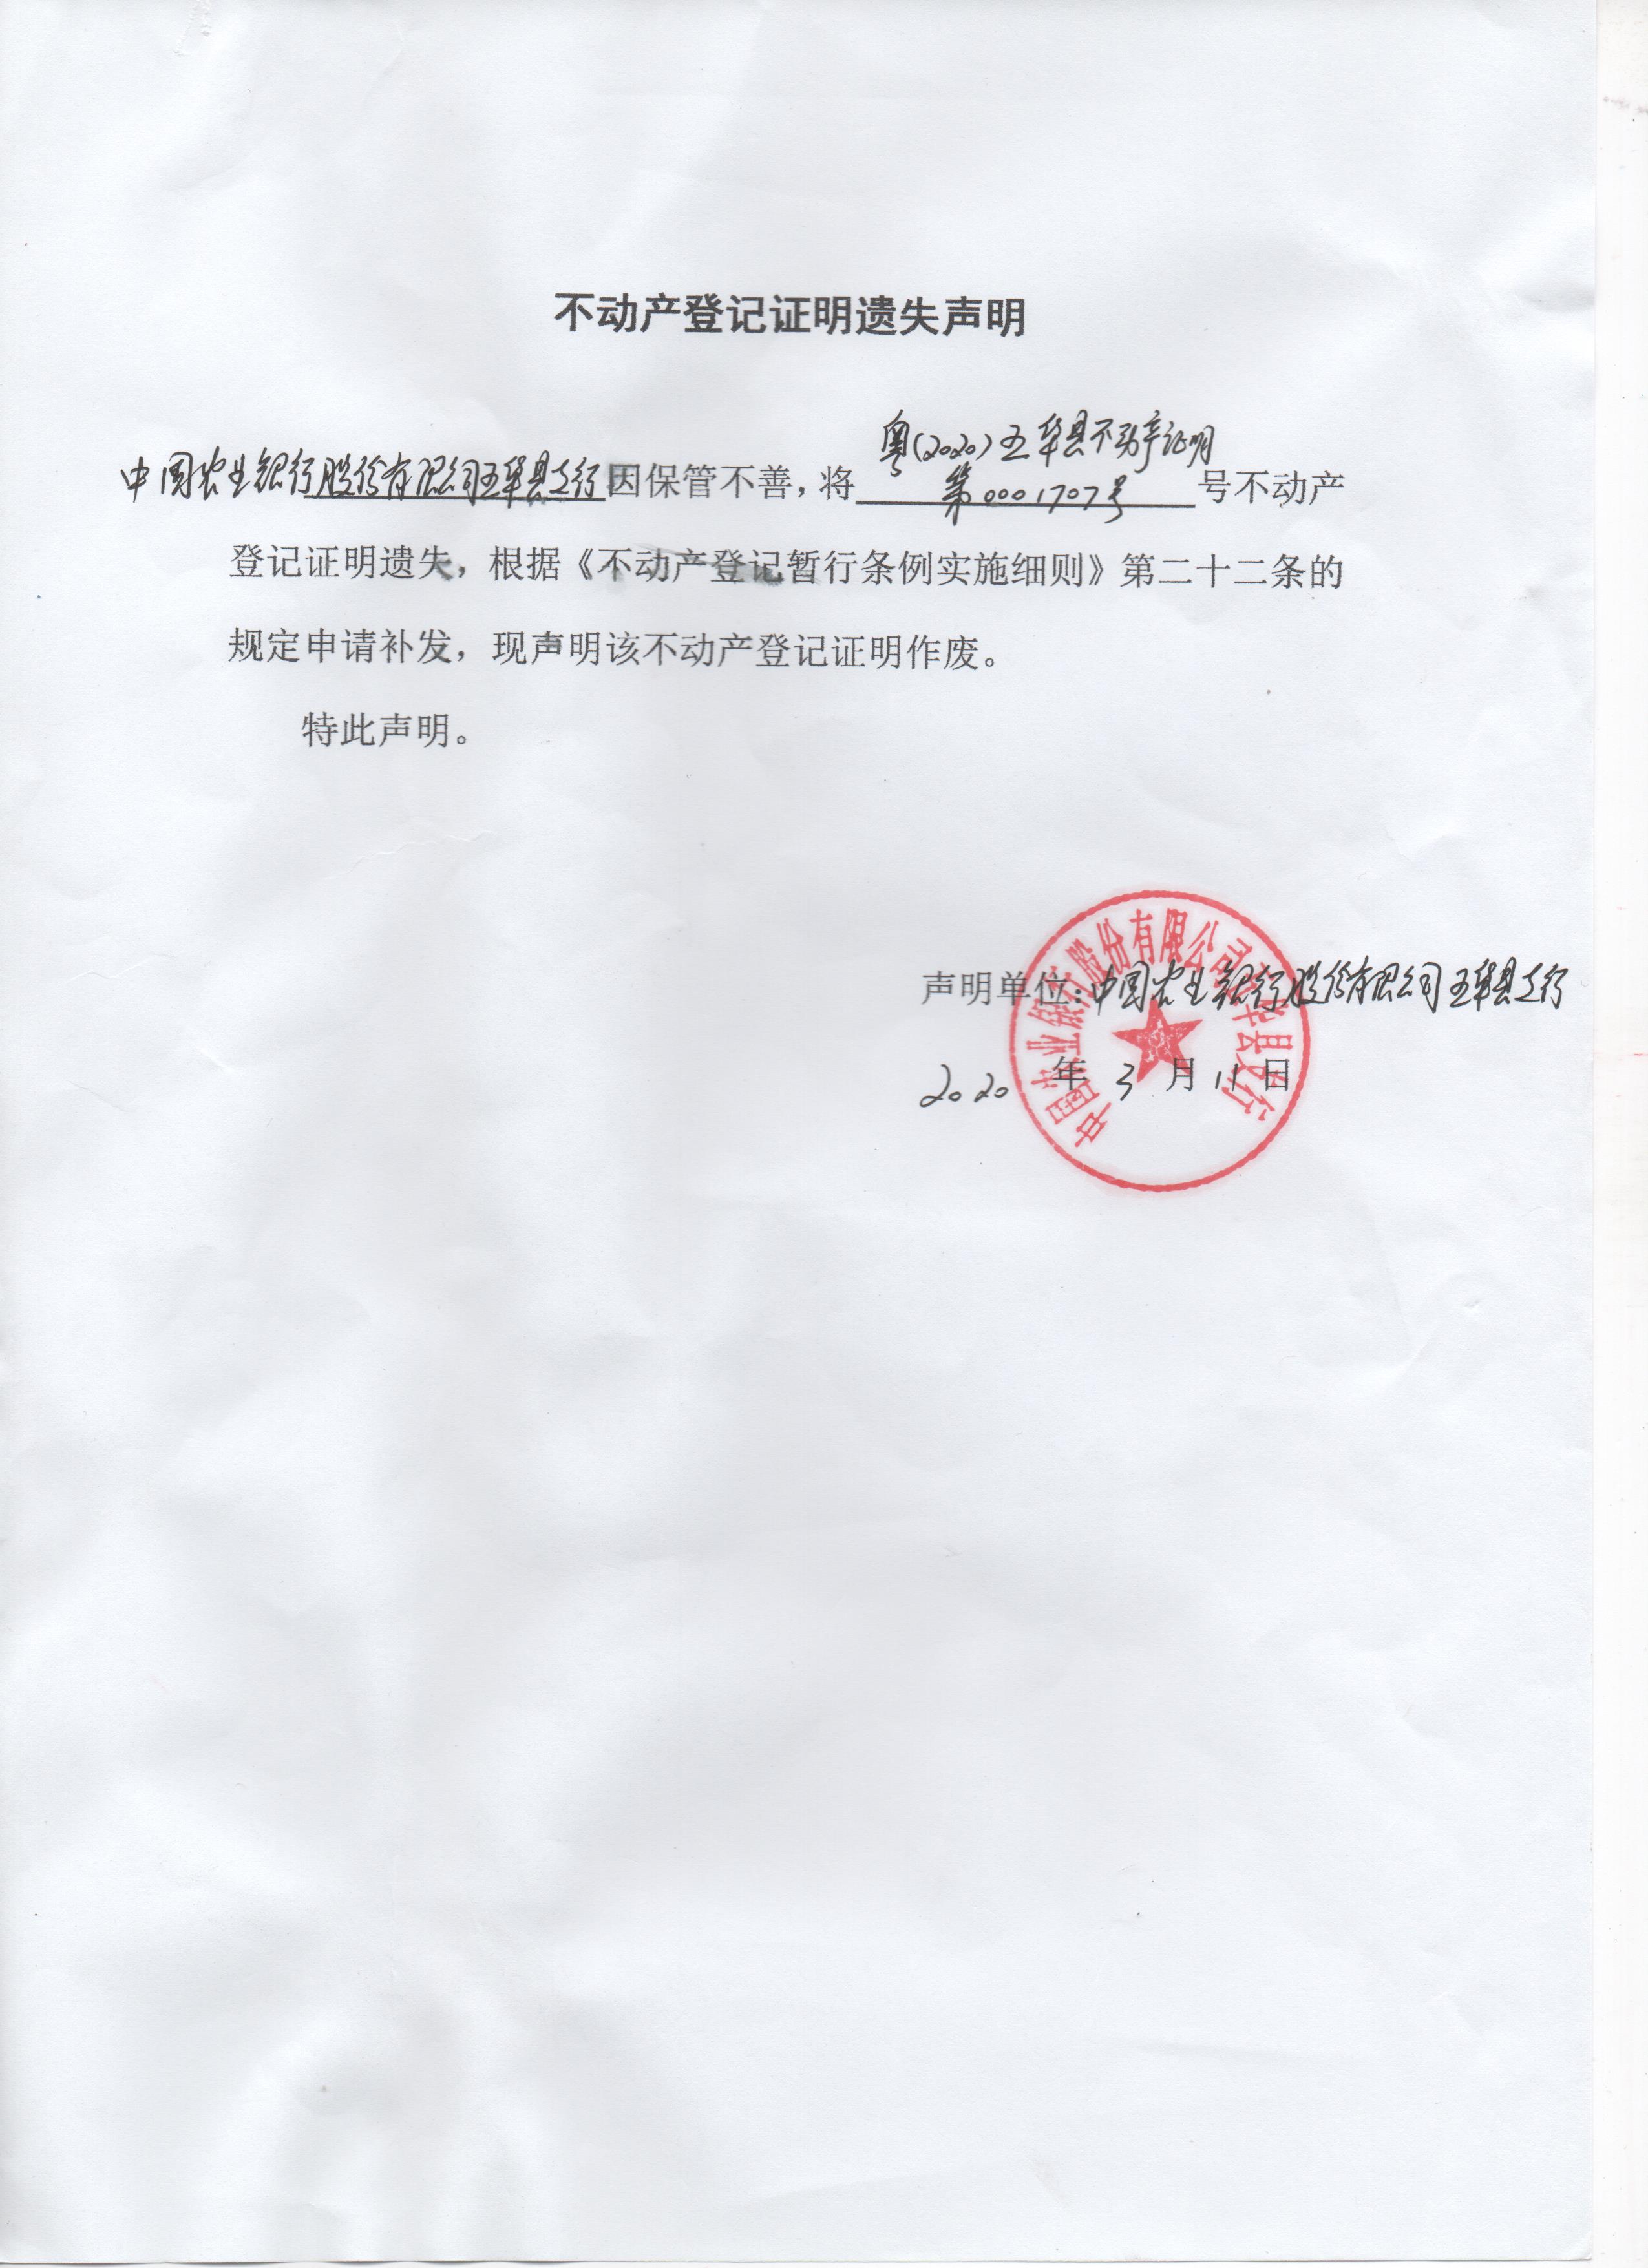 不动产登记证明遗失声明中国农业银行股份有限公司五华县支行